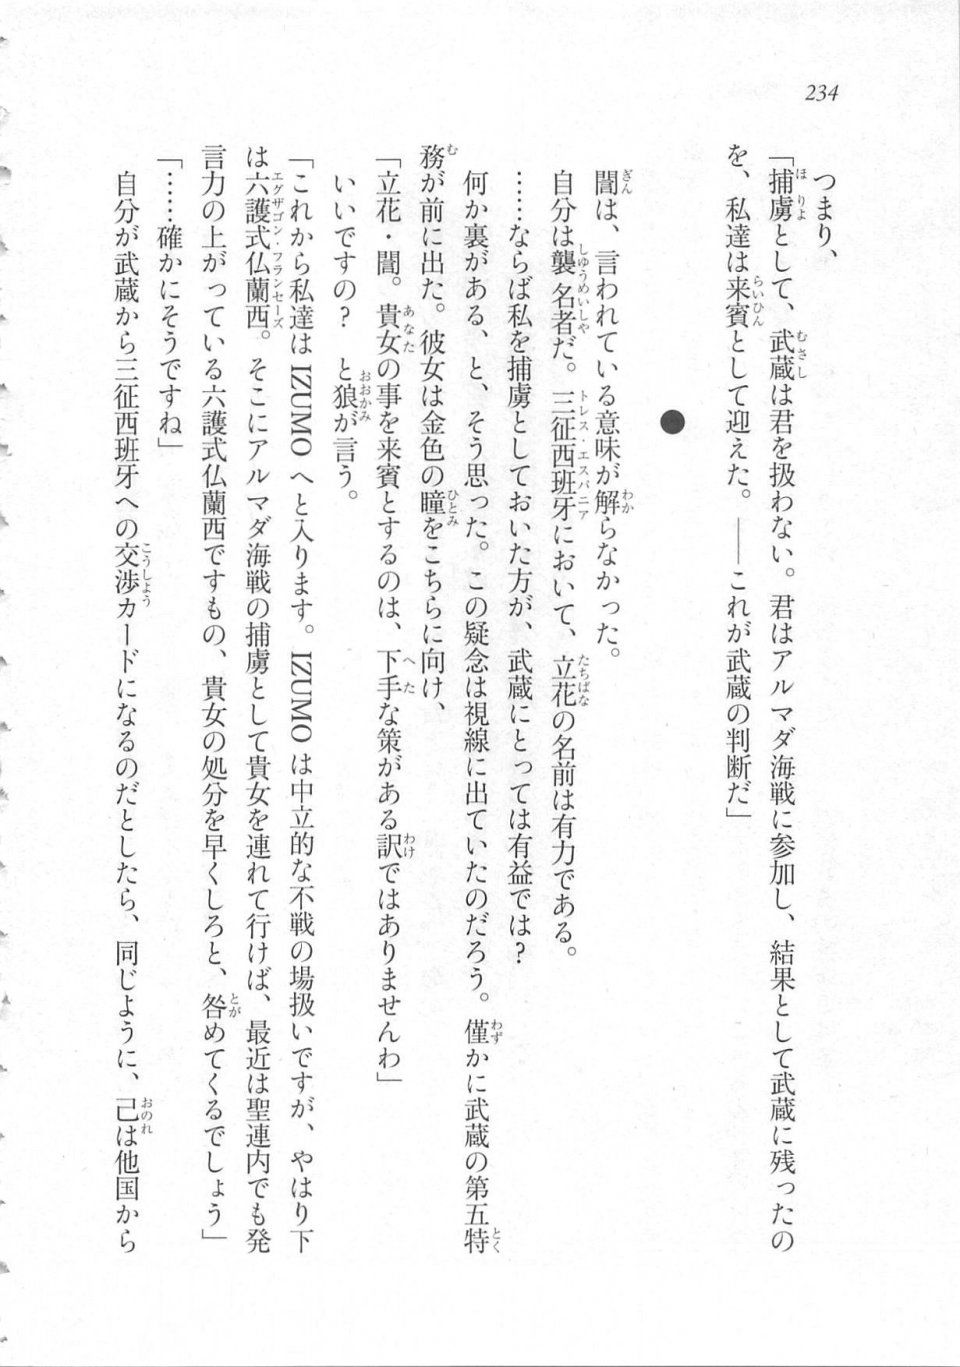 Kyoukai Senjou no Horizon LN Sidestory Vol 3 - Photo #238